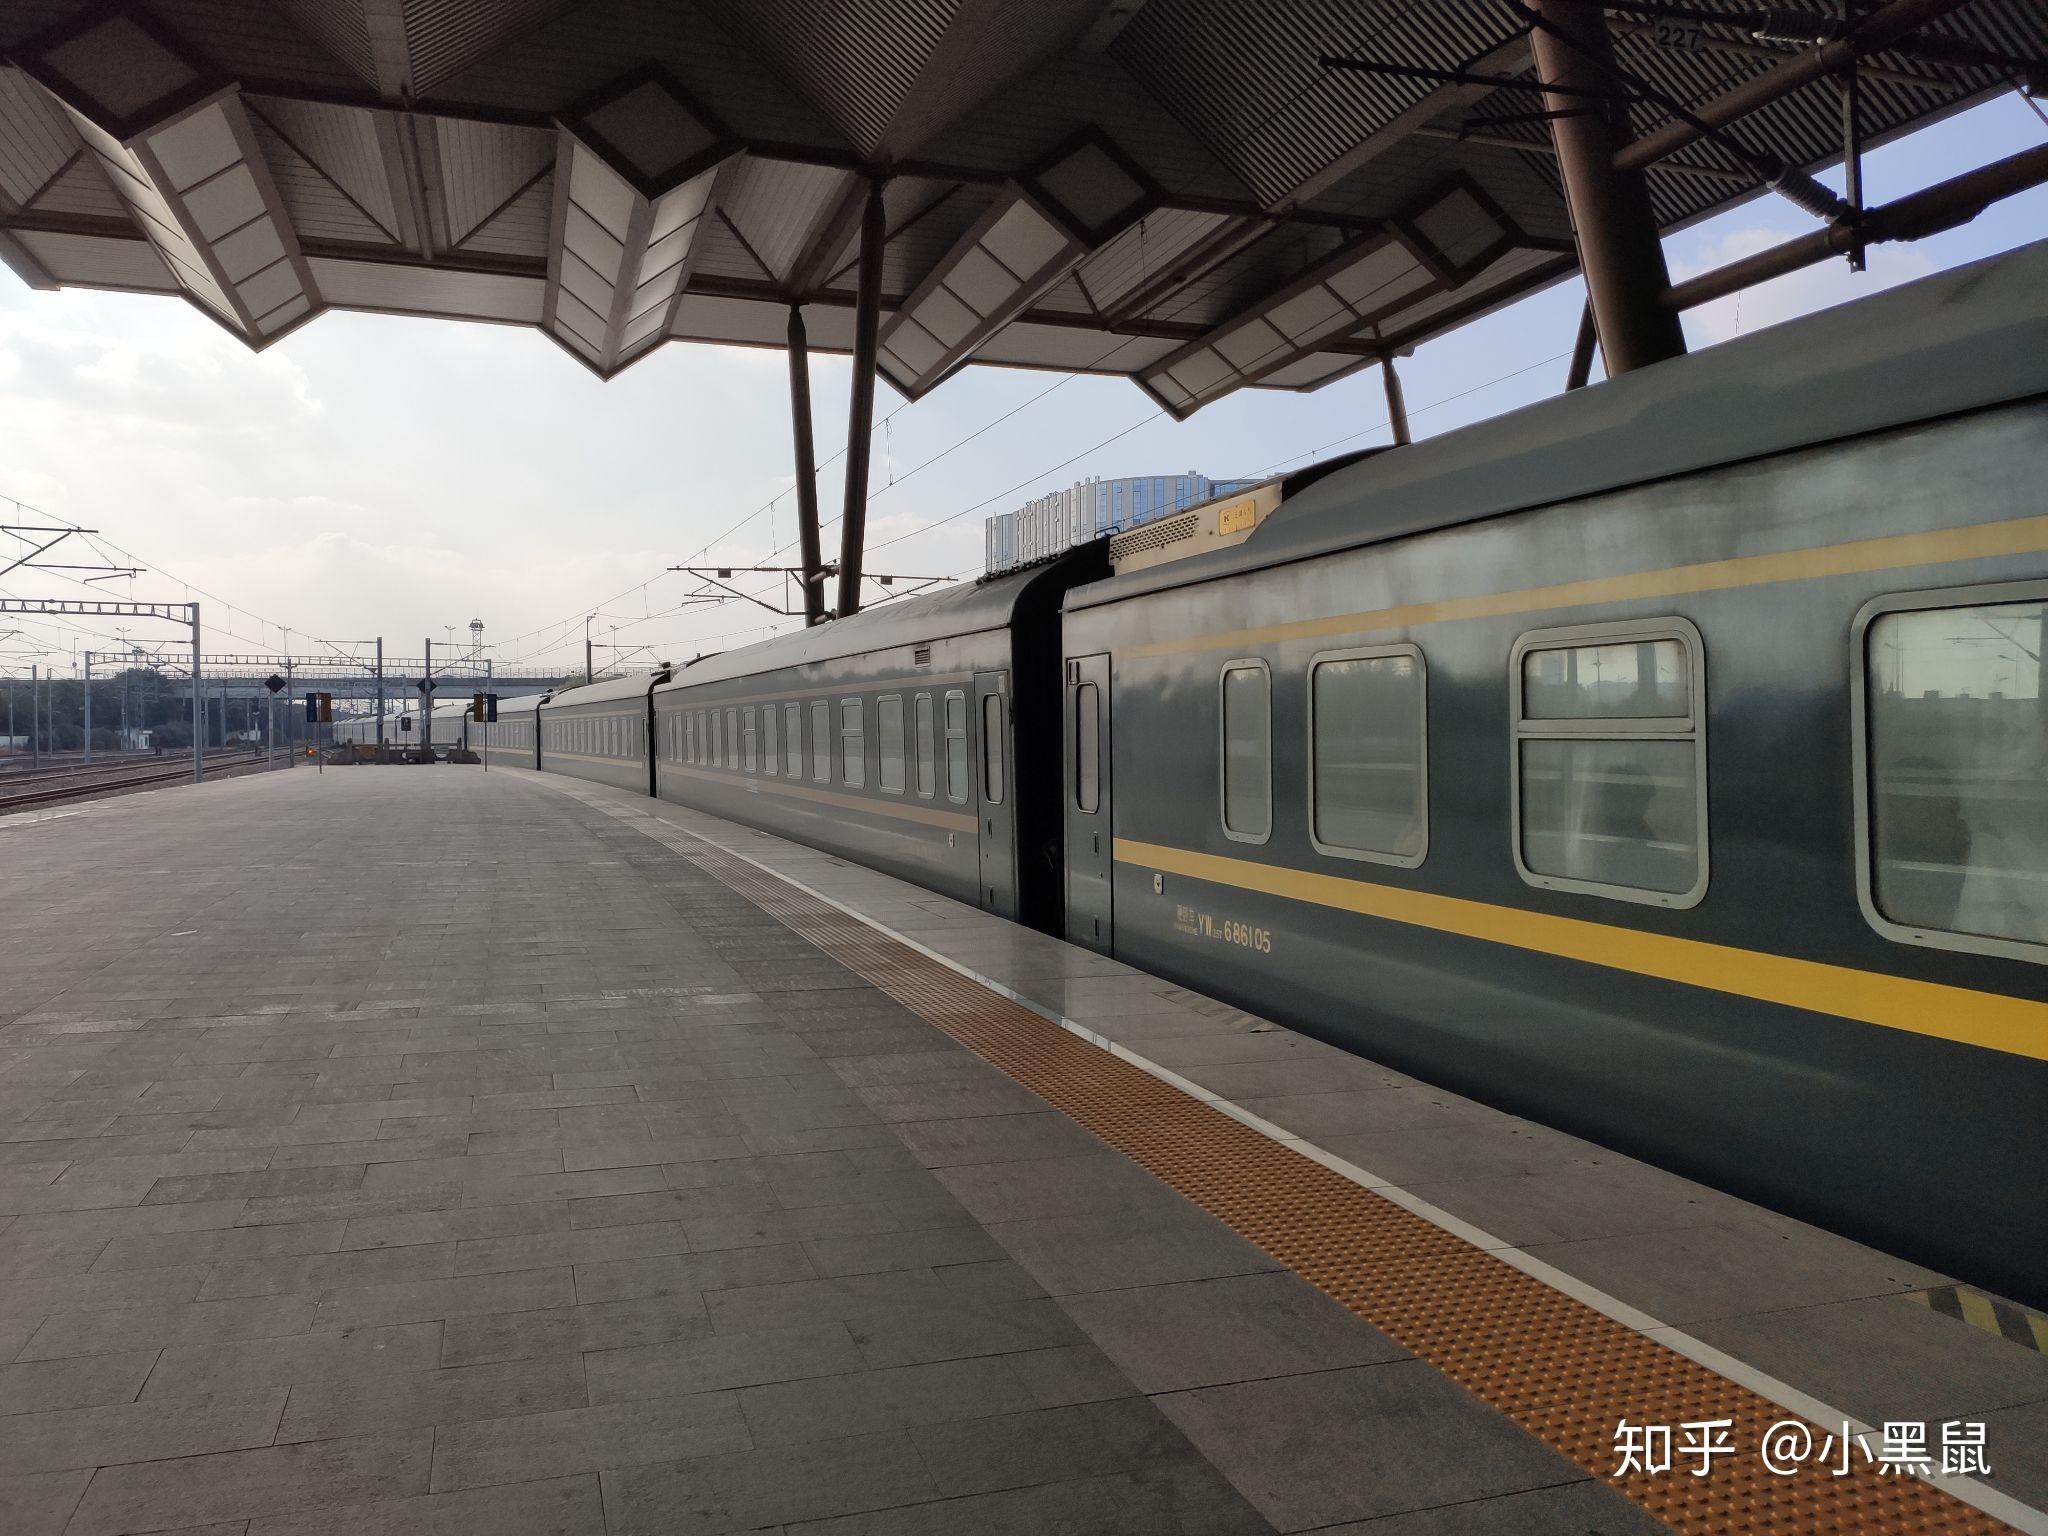 是京沪普速线沪宁区间仅存的软座车;且z215次列车在南京-上海区间排点